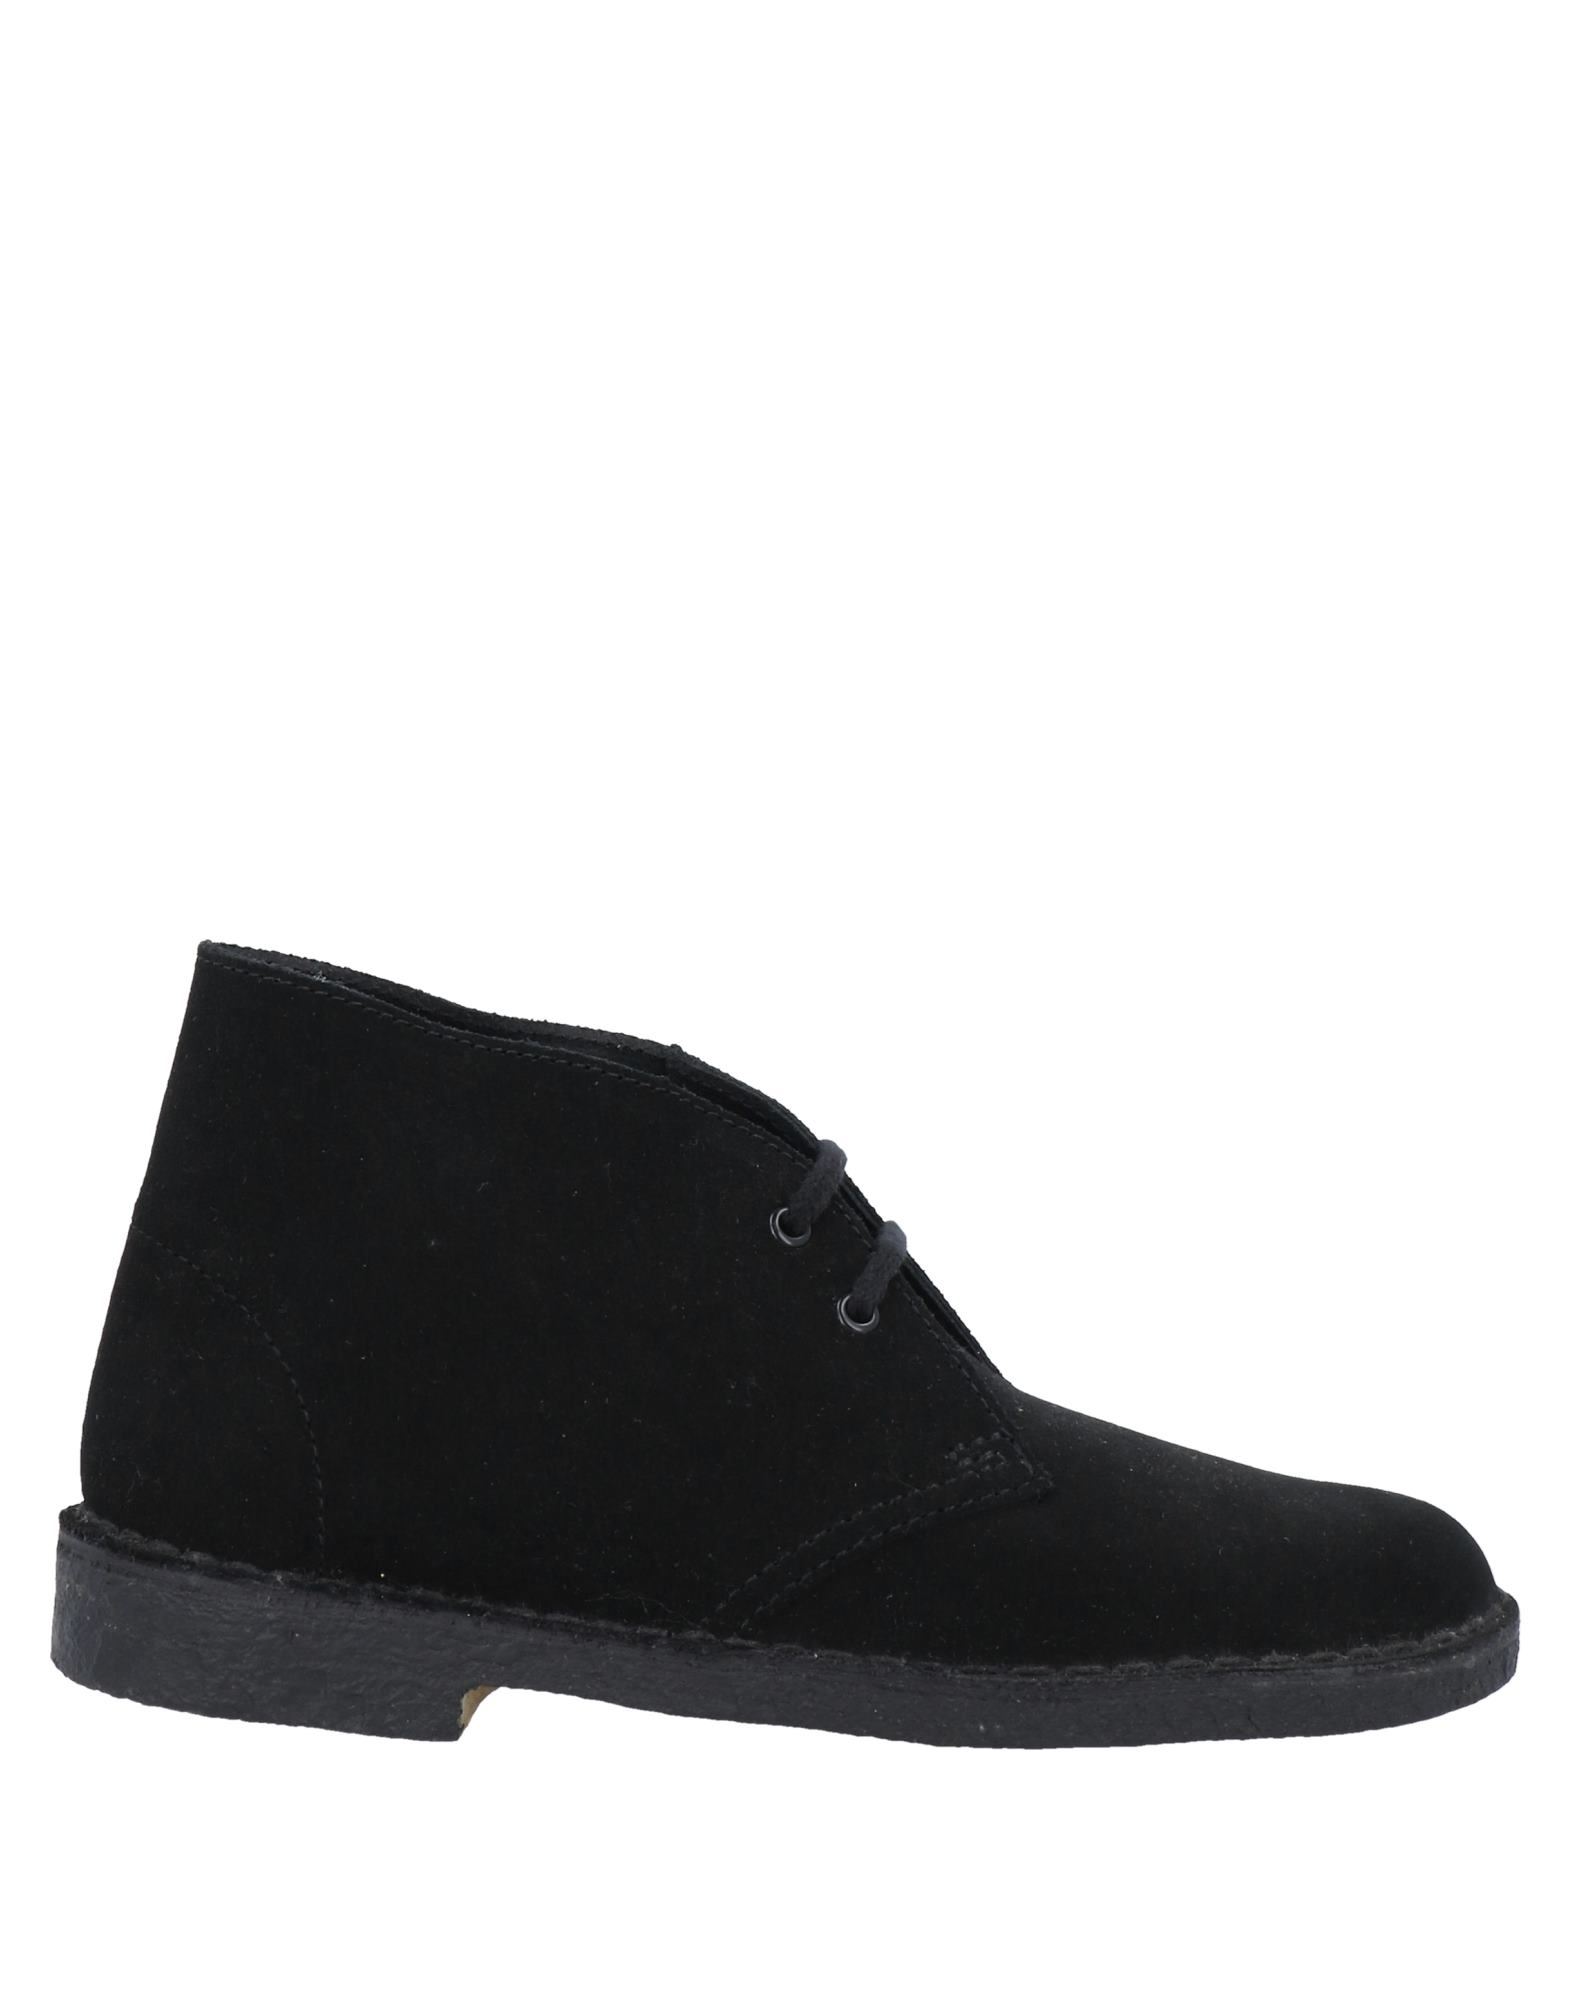 Shop Clarks Originals Woman Ankle Boots Black Size 7 Soft Leather